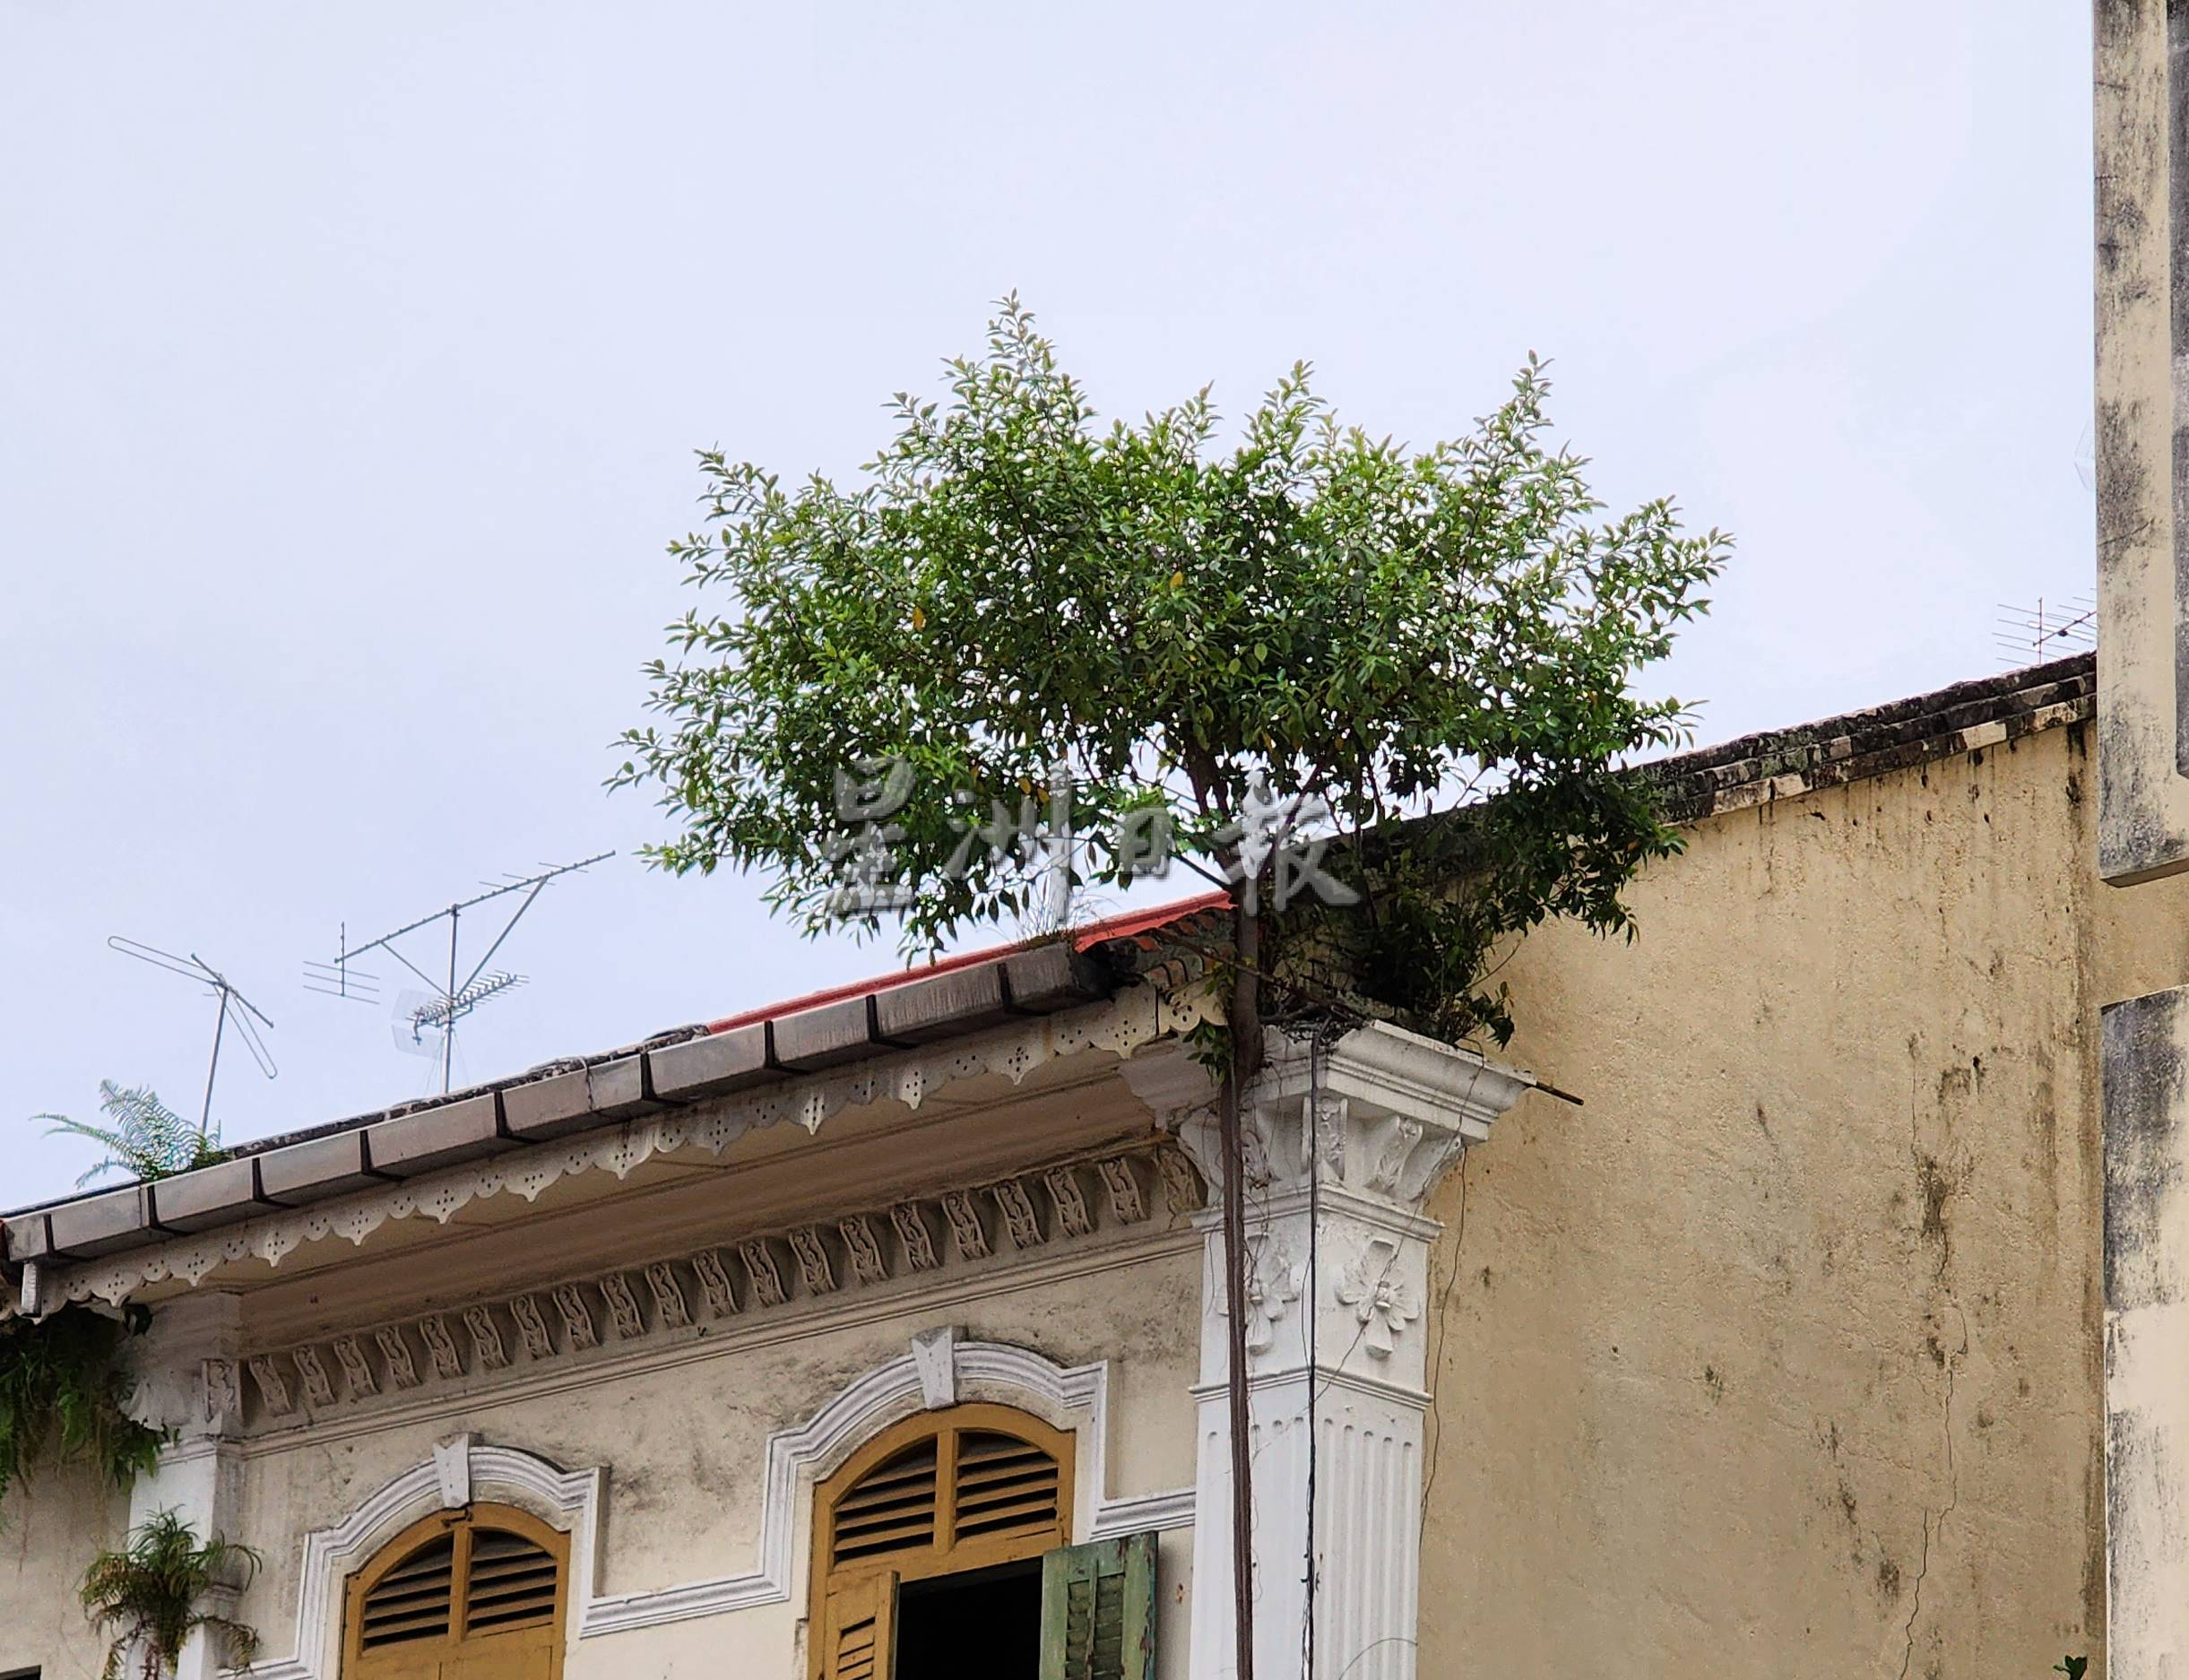 （古城第二版主文）风势转强，梁证法促清理屋顶上植物以免发生意外